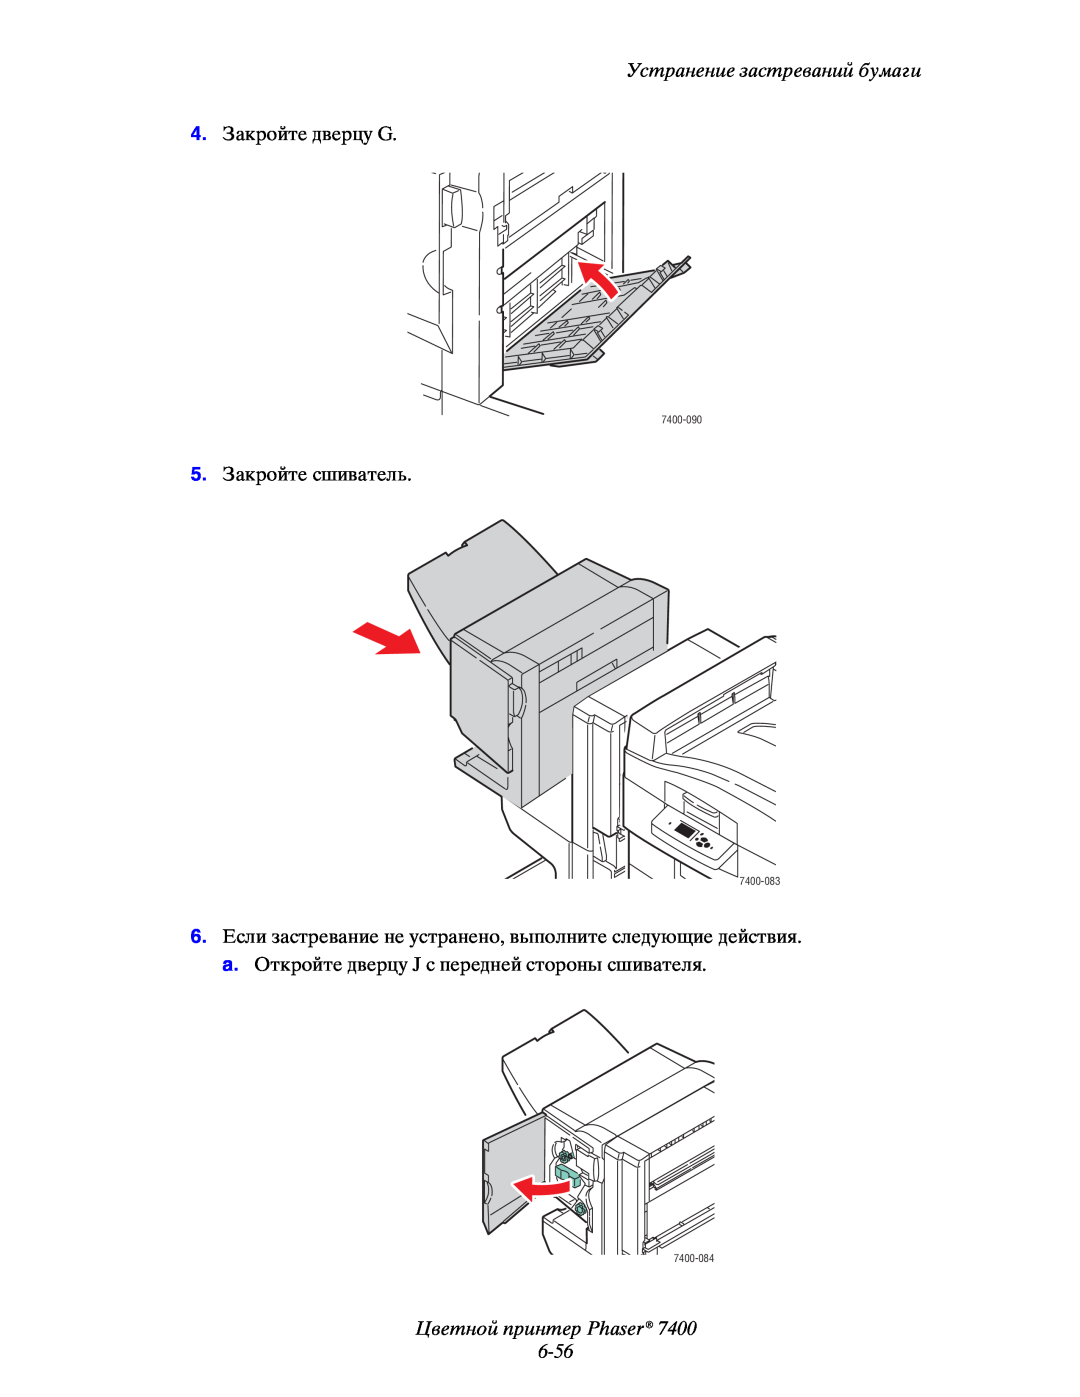 Xerox manual Цветной принтер Phaser 6-56, Устранение застреваний бумаги, 7400-090, 7400-083, 7400-084 